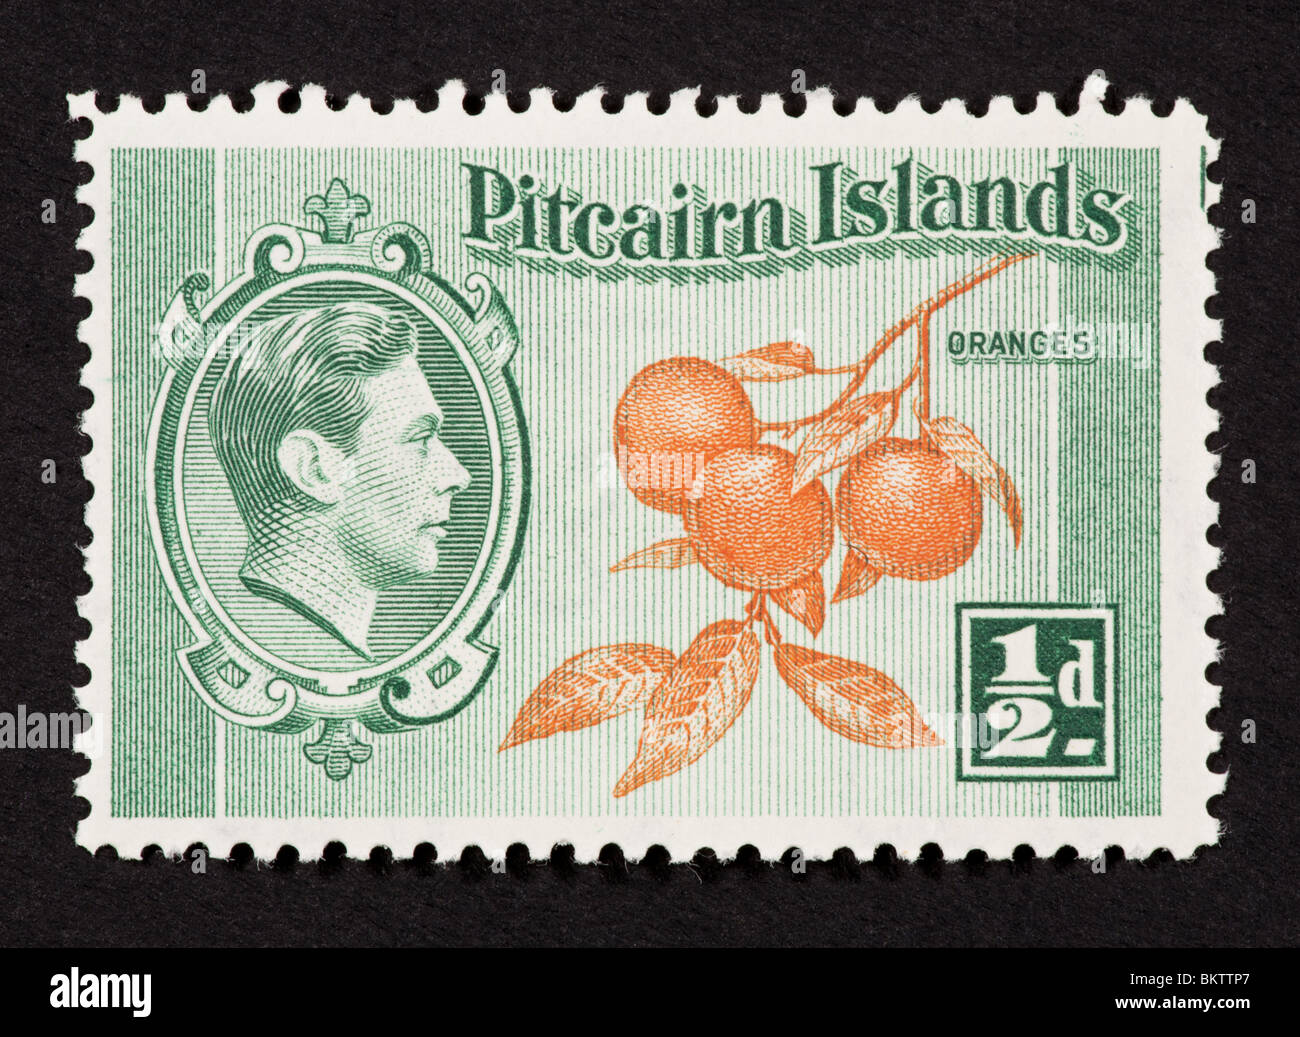 Briefmarke aus der Pitcairn-Inseln mit Orangen und George VI. Stockfoto